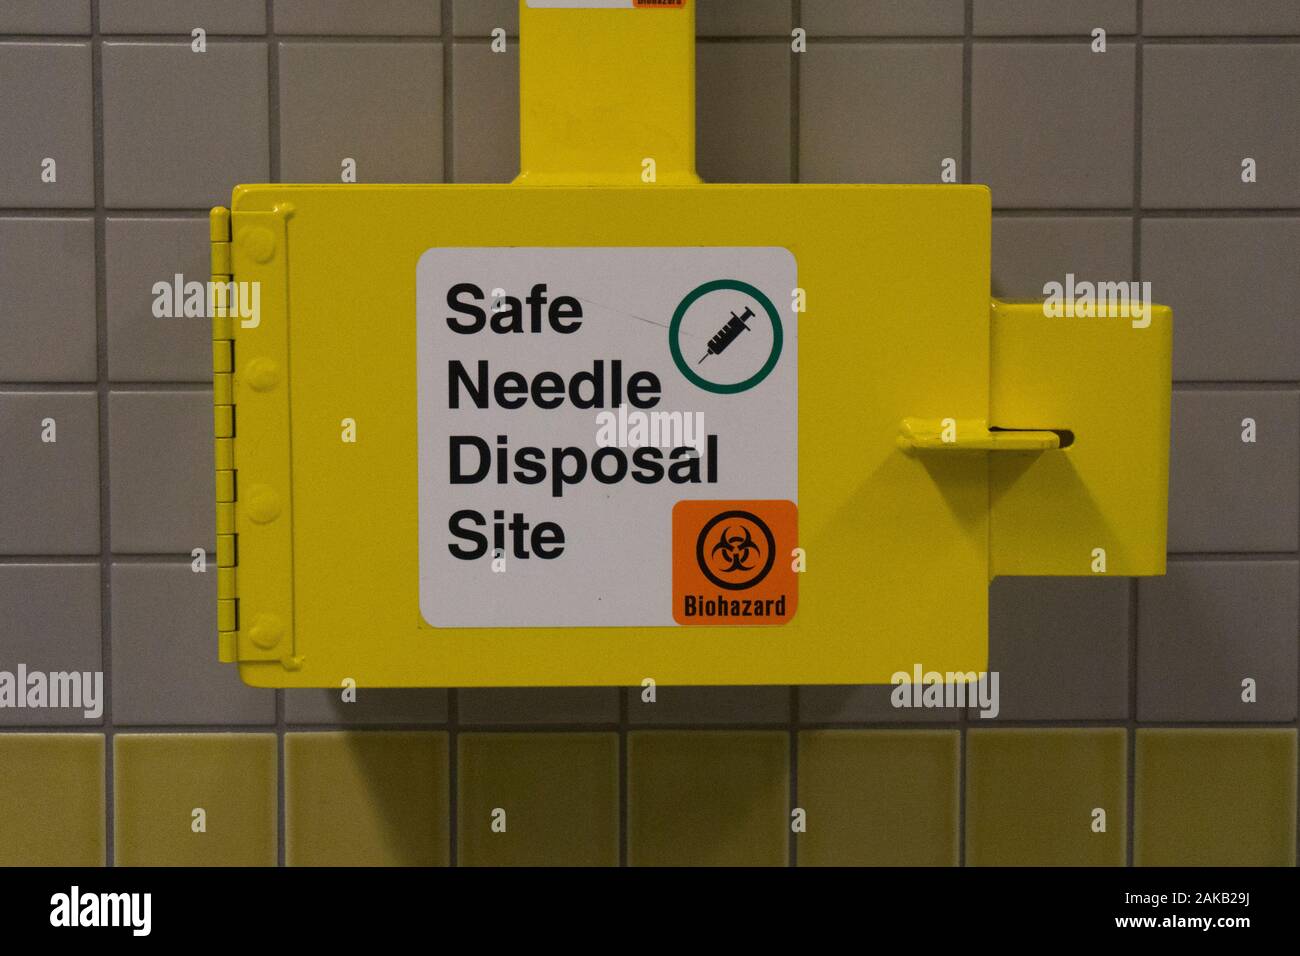 Safe Medical contenant d'élimination de l'aiguille sur un mur de toilettes Banque D'Images